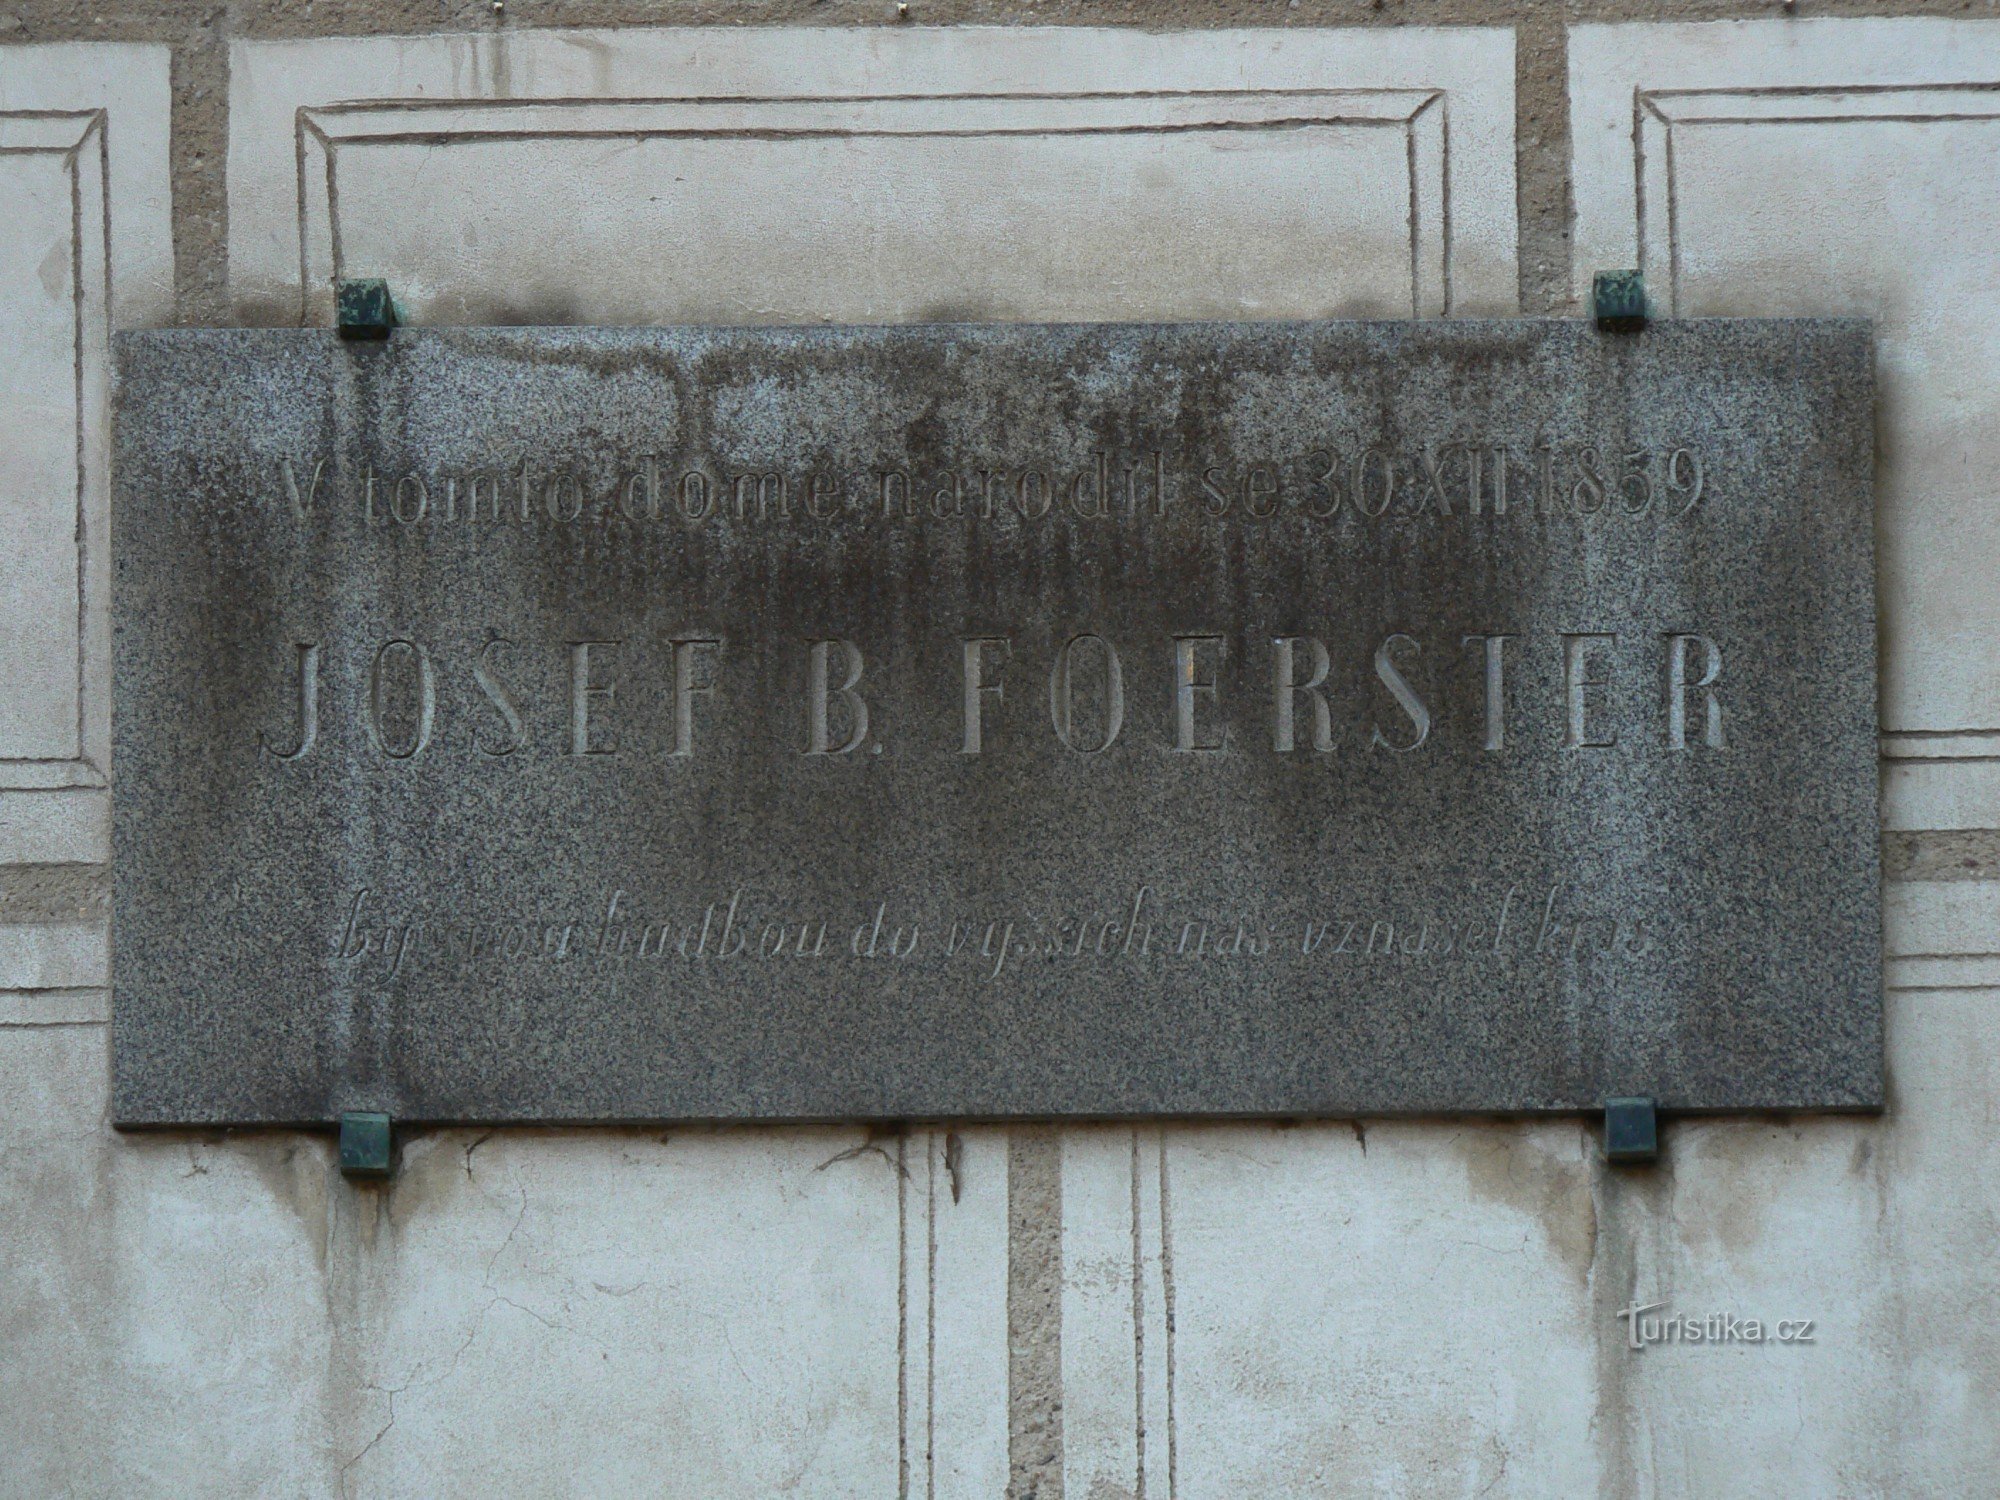 Tấm bảng tưởng niệm Josef B. Foerster